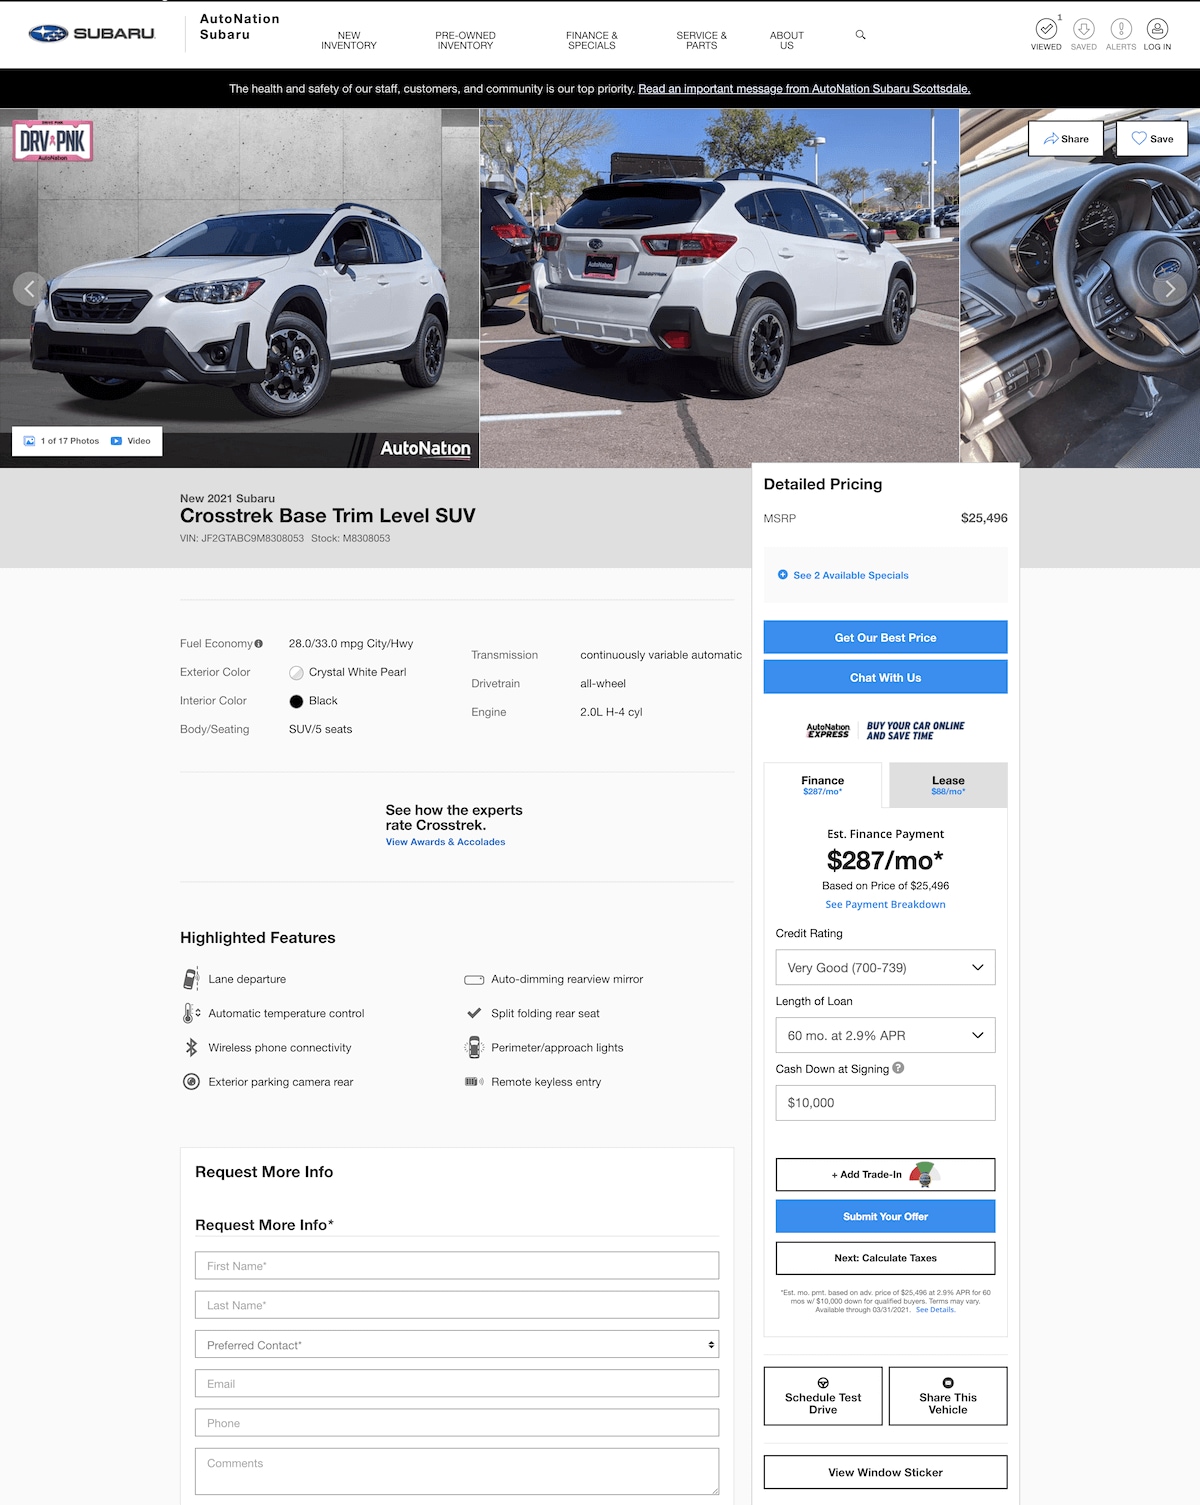 AutoNation Subaru West vehicle details page